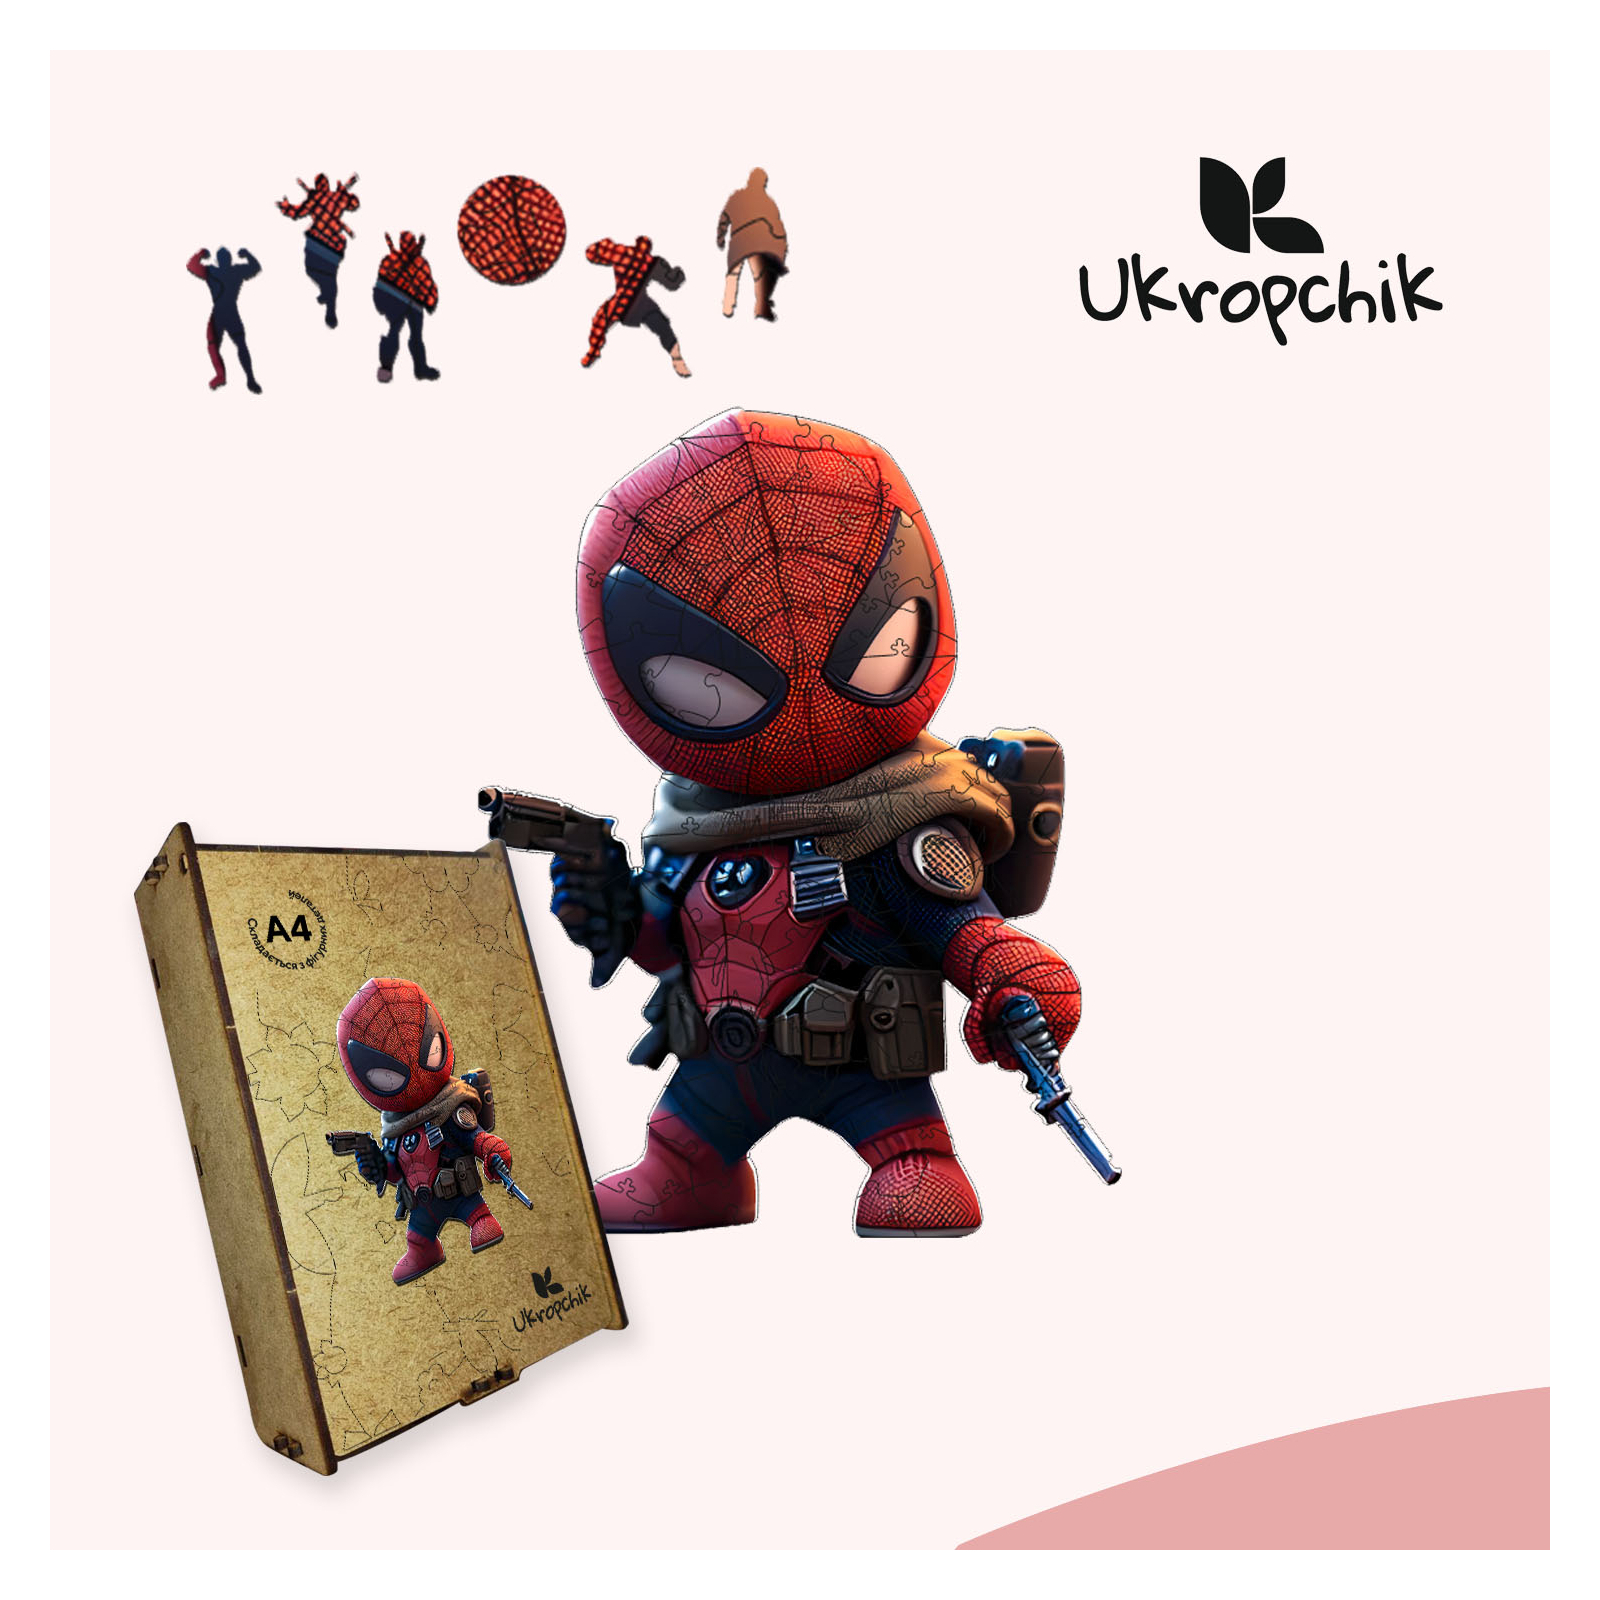 Пазл Ukropchik дерев'яний Супергерой Дедпул size - L в коробці з набором-рамкою (Deadpool Superhero A3) зображення 5